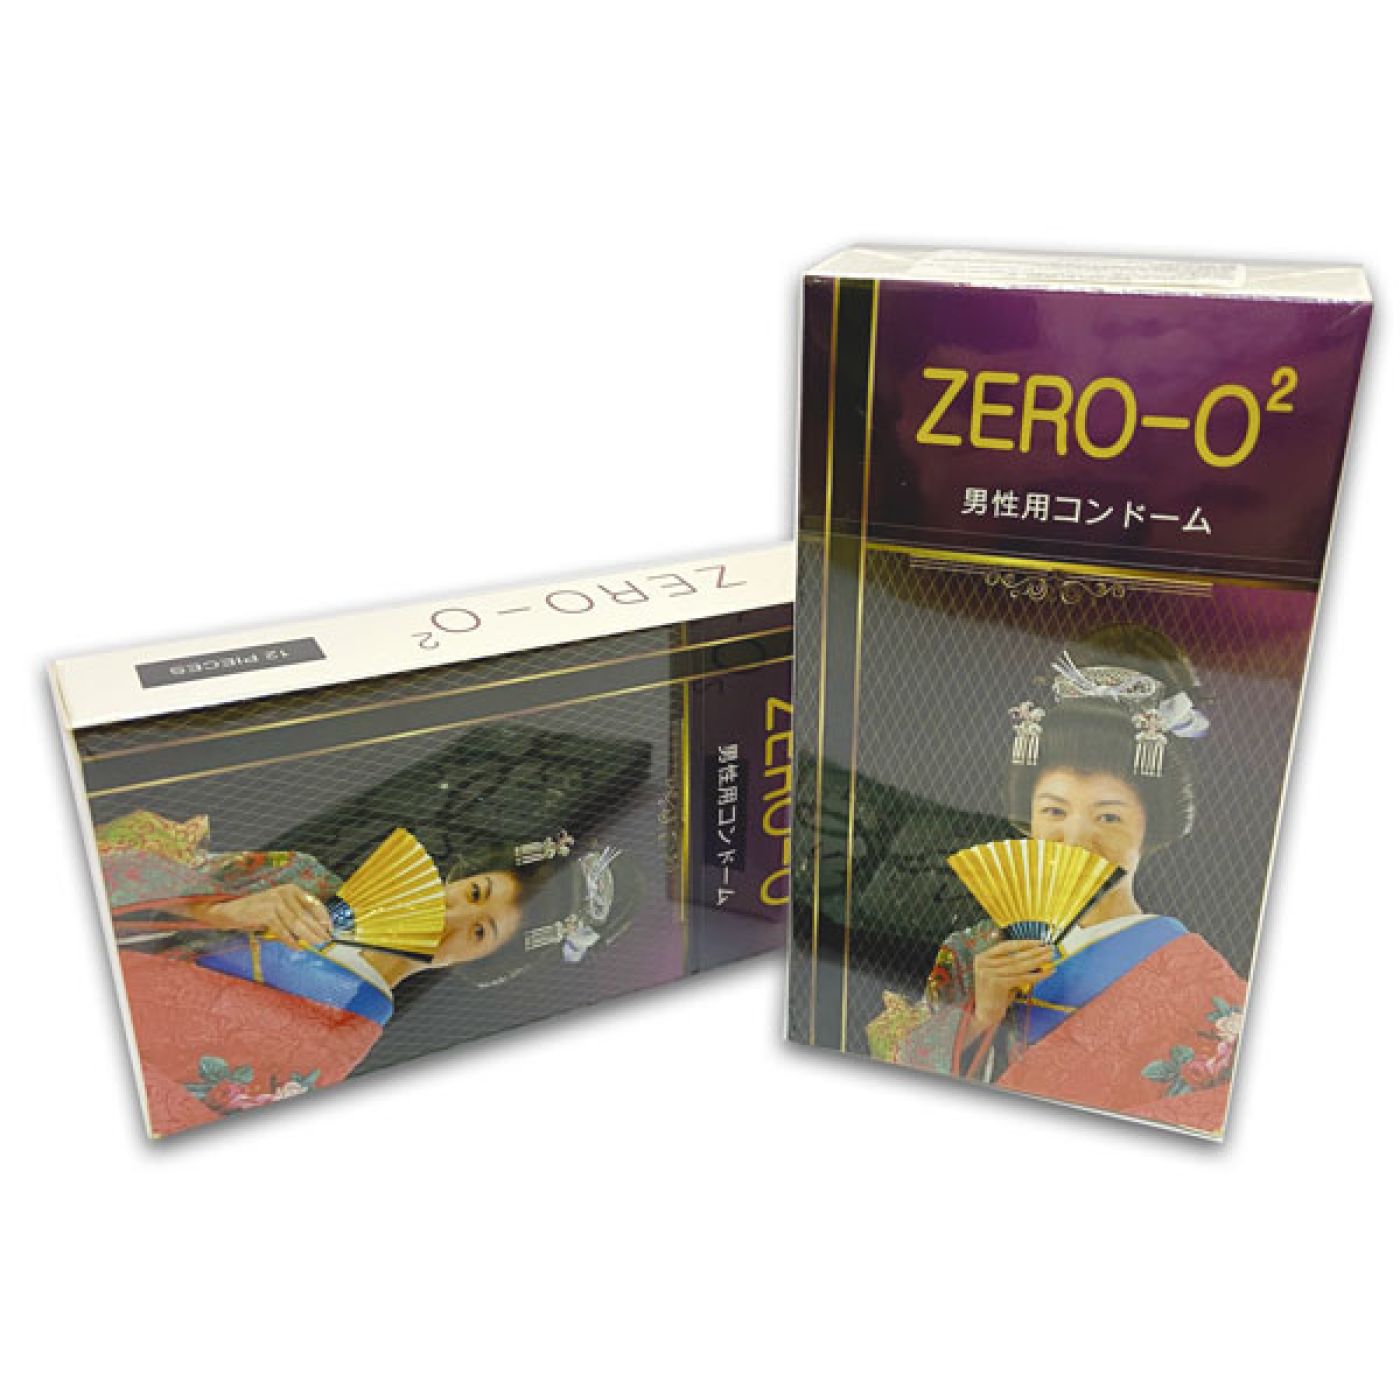 Bao cao su Zero O2 Siêu mỏng, Chính hãng Nhật Bản (12c/h)